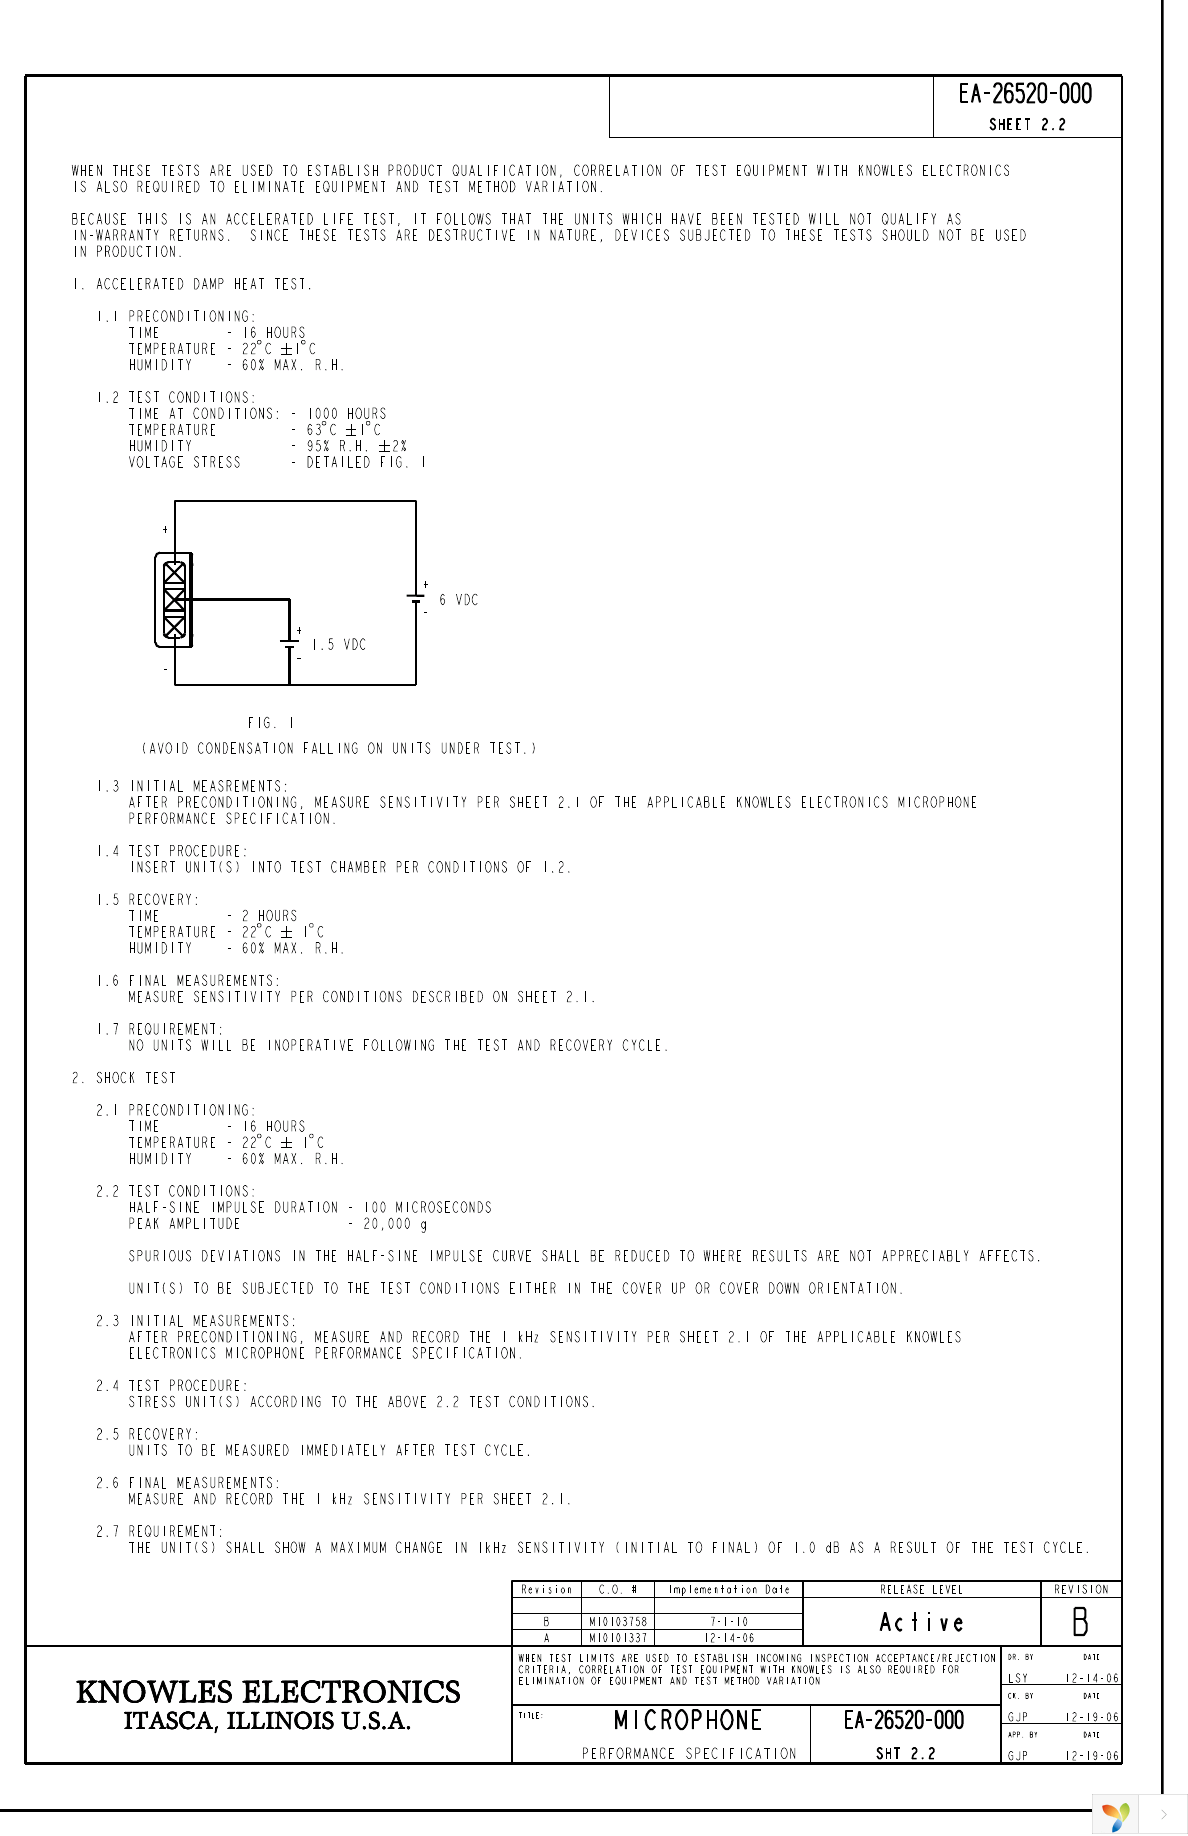 EA-26520-000 Page 3